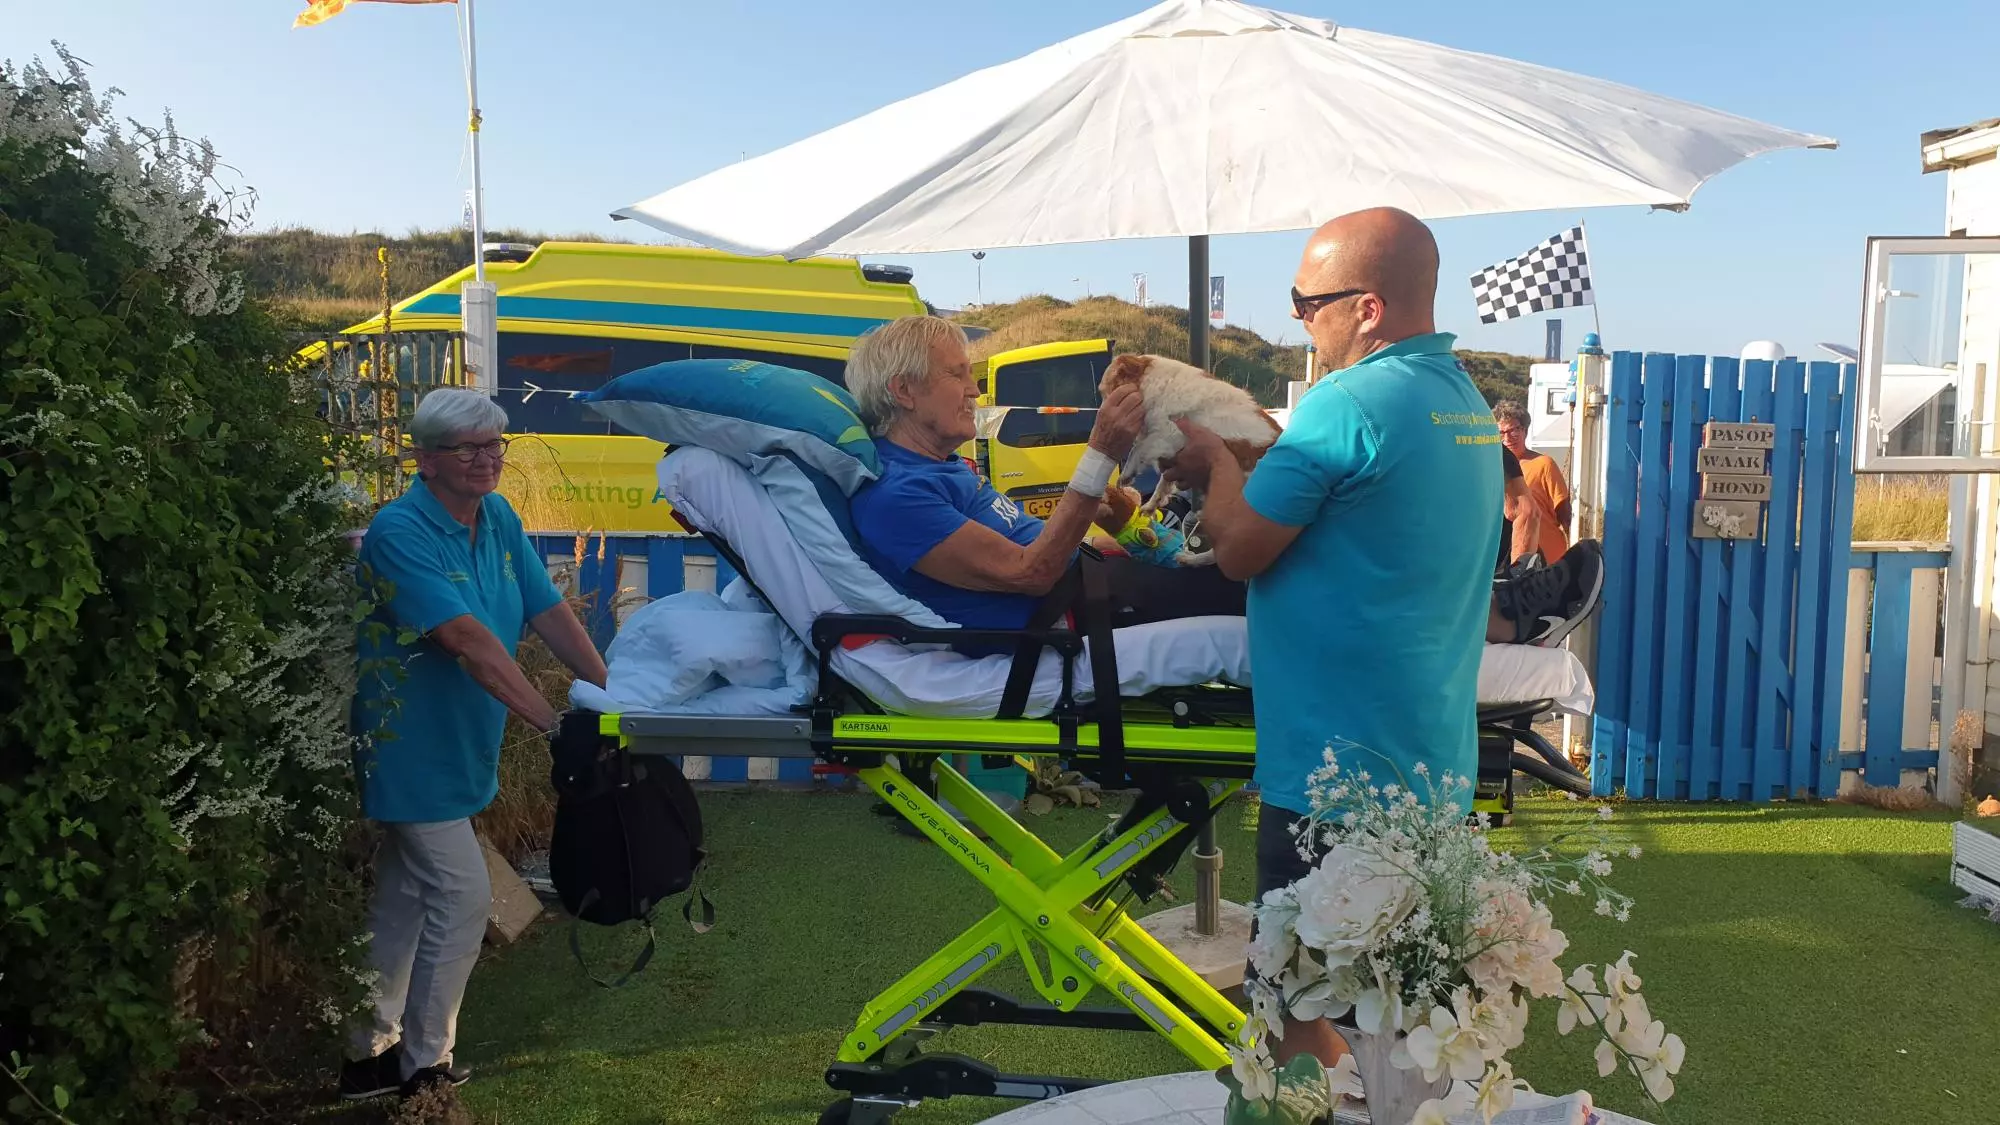 Jan (81) kon tóch Formule 1 kijken in Zandvoort dankzij Ambulance Wens